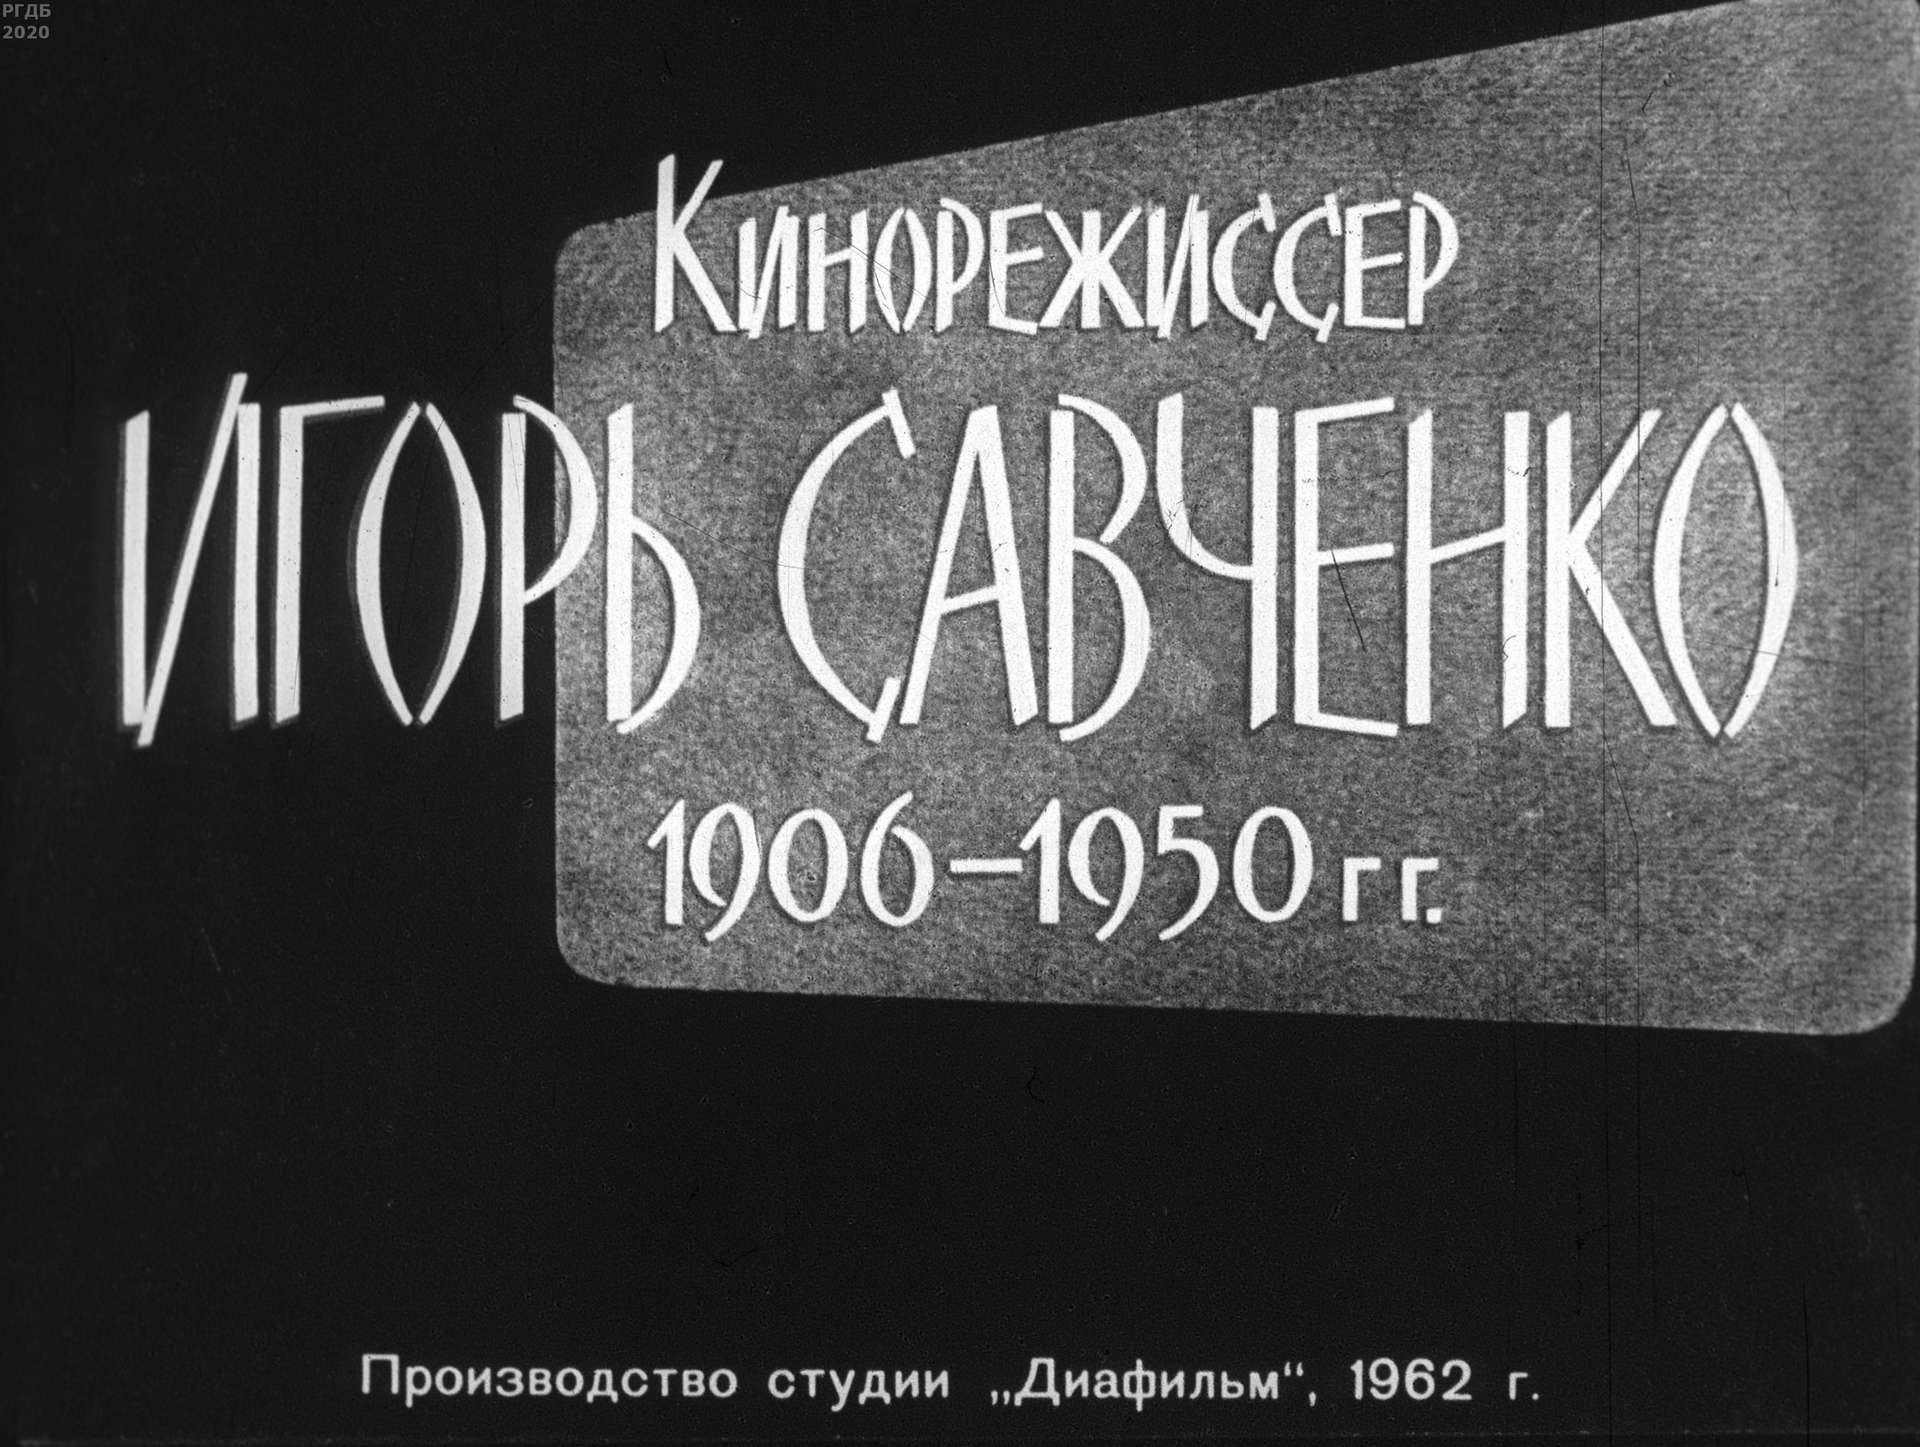 Кинорежиссер Игорь Савченко. 1906-1950 гг.